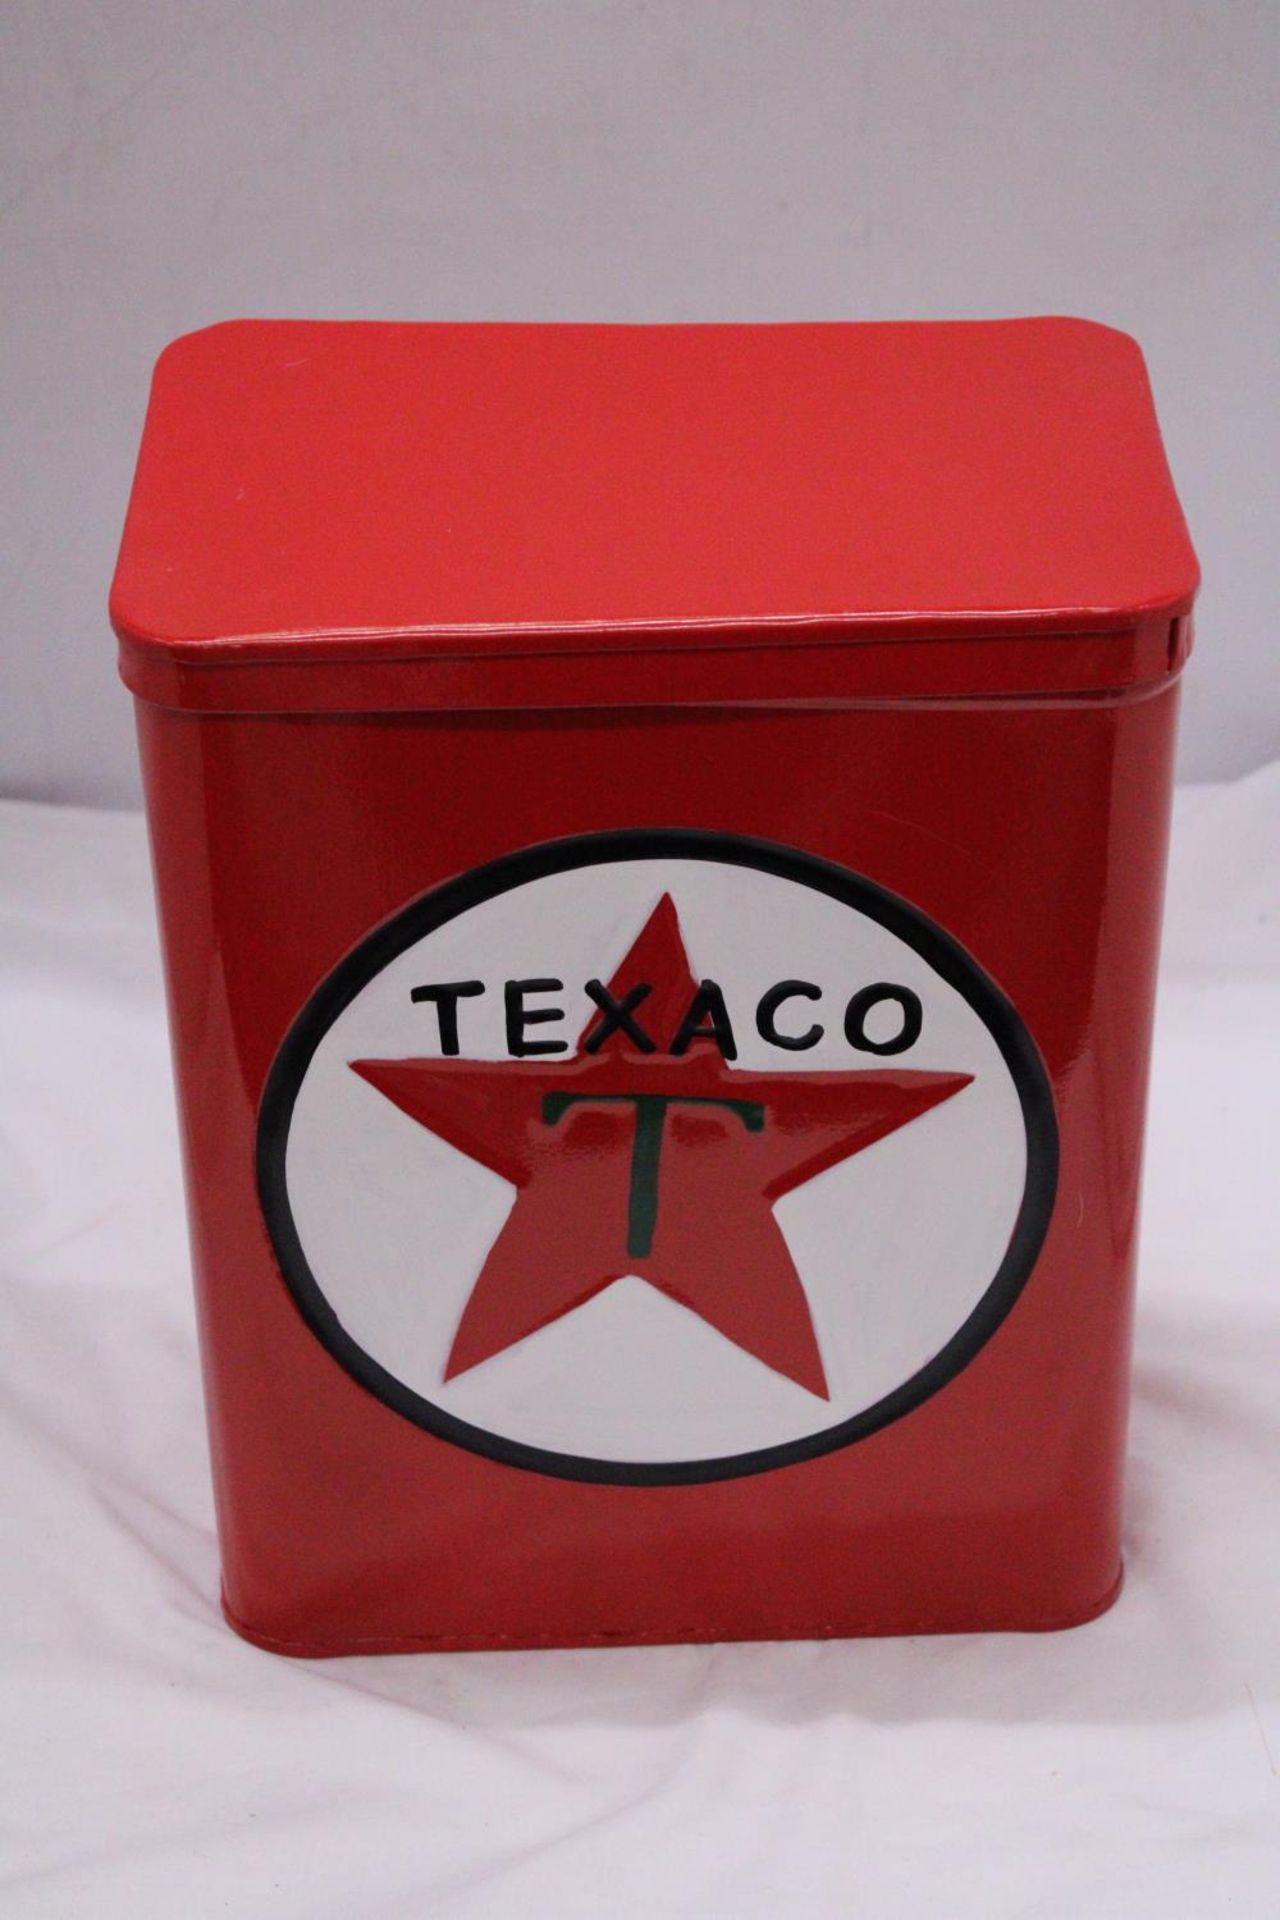 A RED 'TEXACO' STORAGE TIN - Image 2 of 4